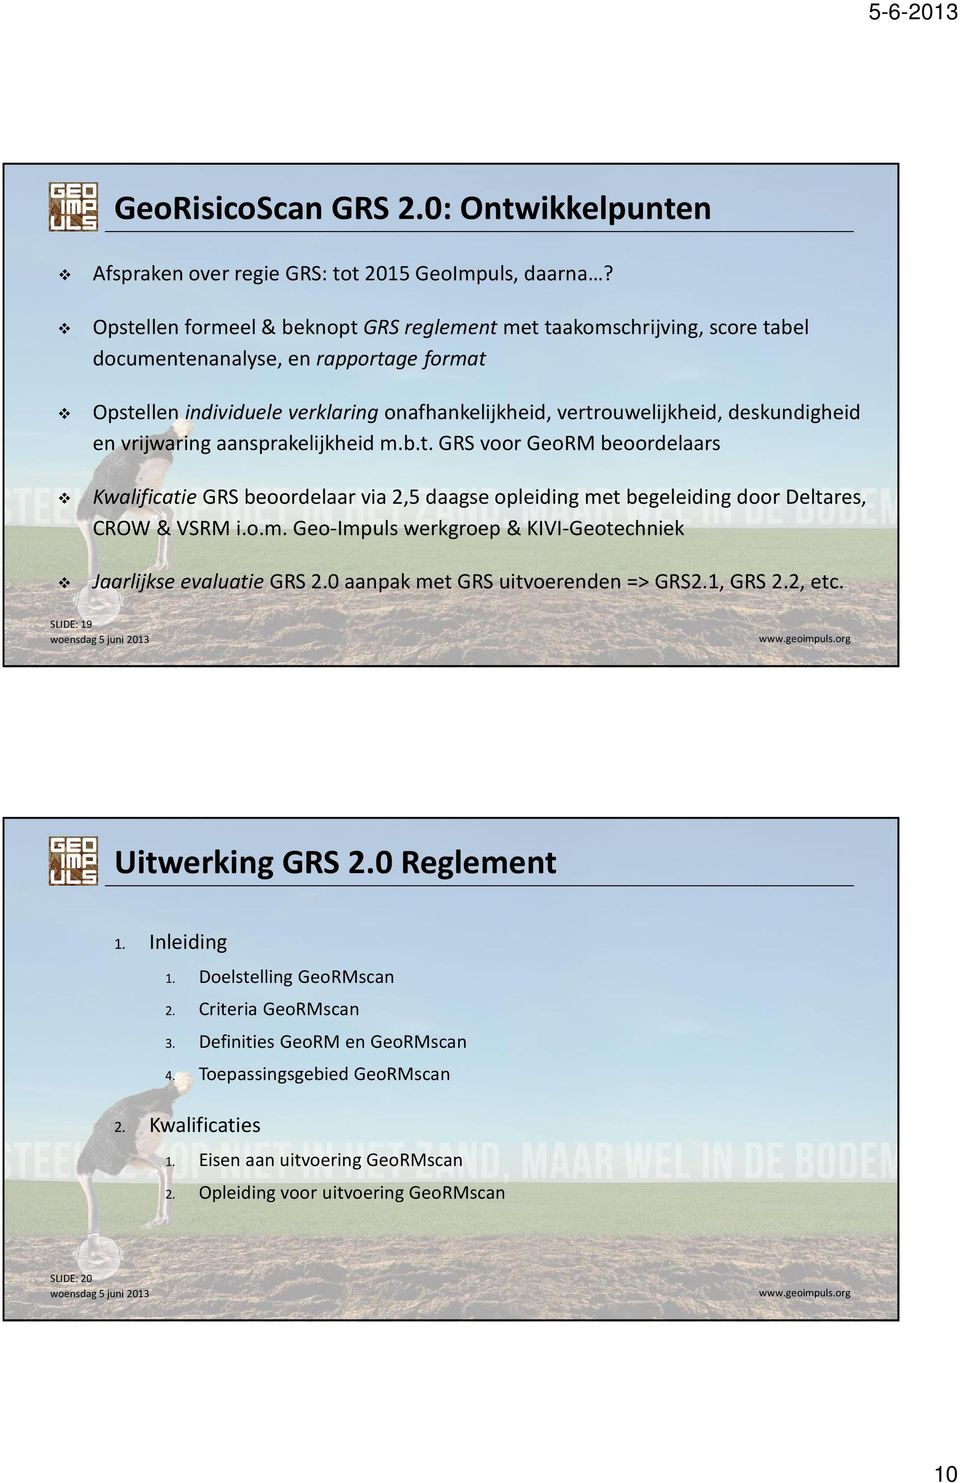 deskundigheid en vrijwaring aansprakelijkheid m.b.t. GRS voor GeoRMbeoordelaars KwalificatieGRS beoordelaar via 2,5 daagse opleiding met begeleiding door Deltares, CROW & VSRM i.o.m. Geo-Impuls werkgroep & KIVI-Geotechniek Jaarlijkse evaluatie GRS 2.